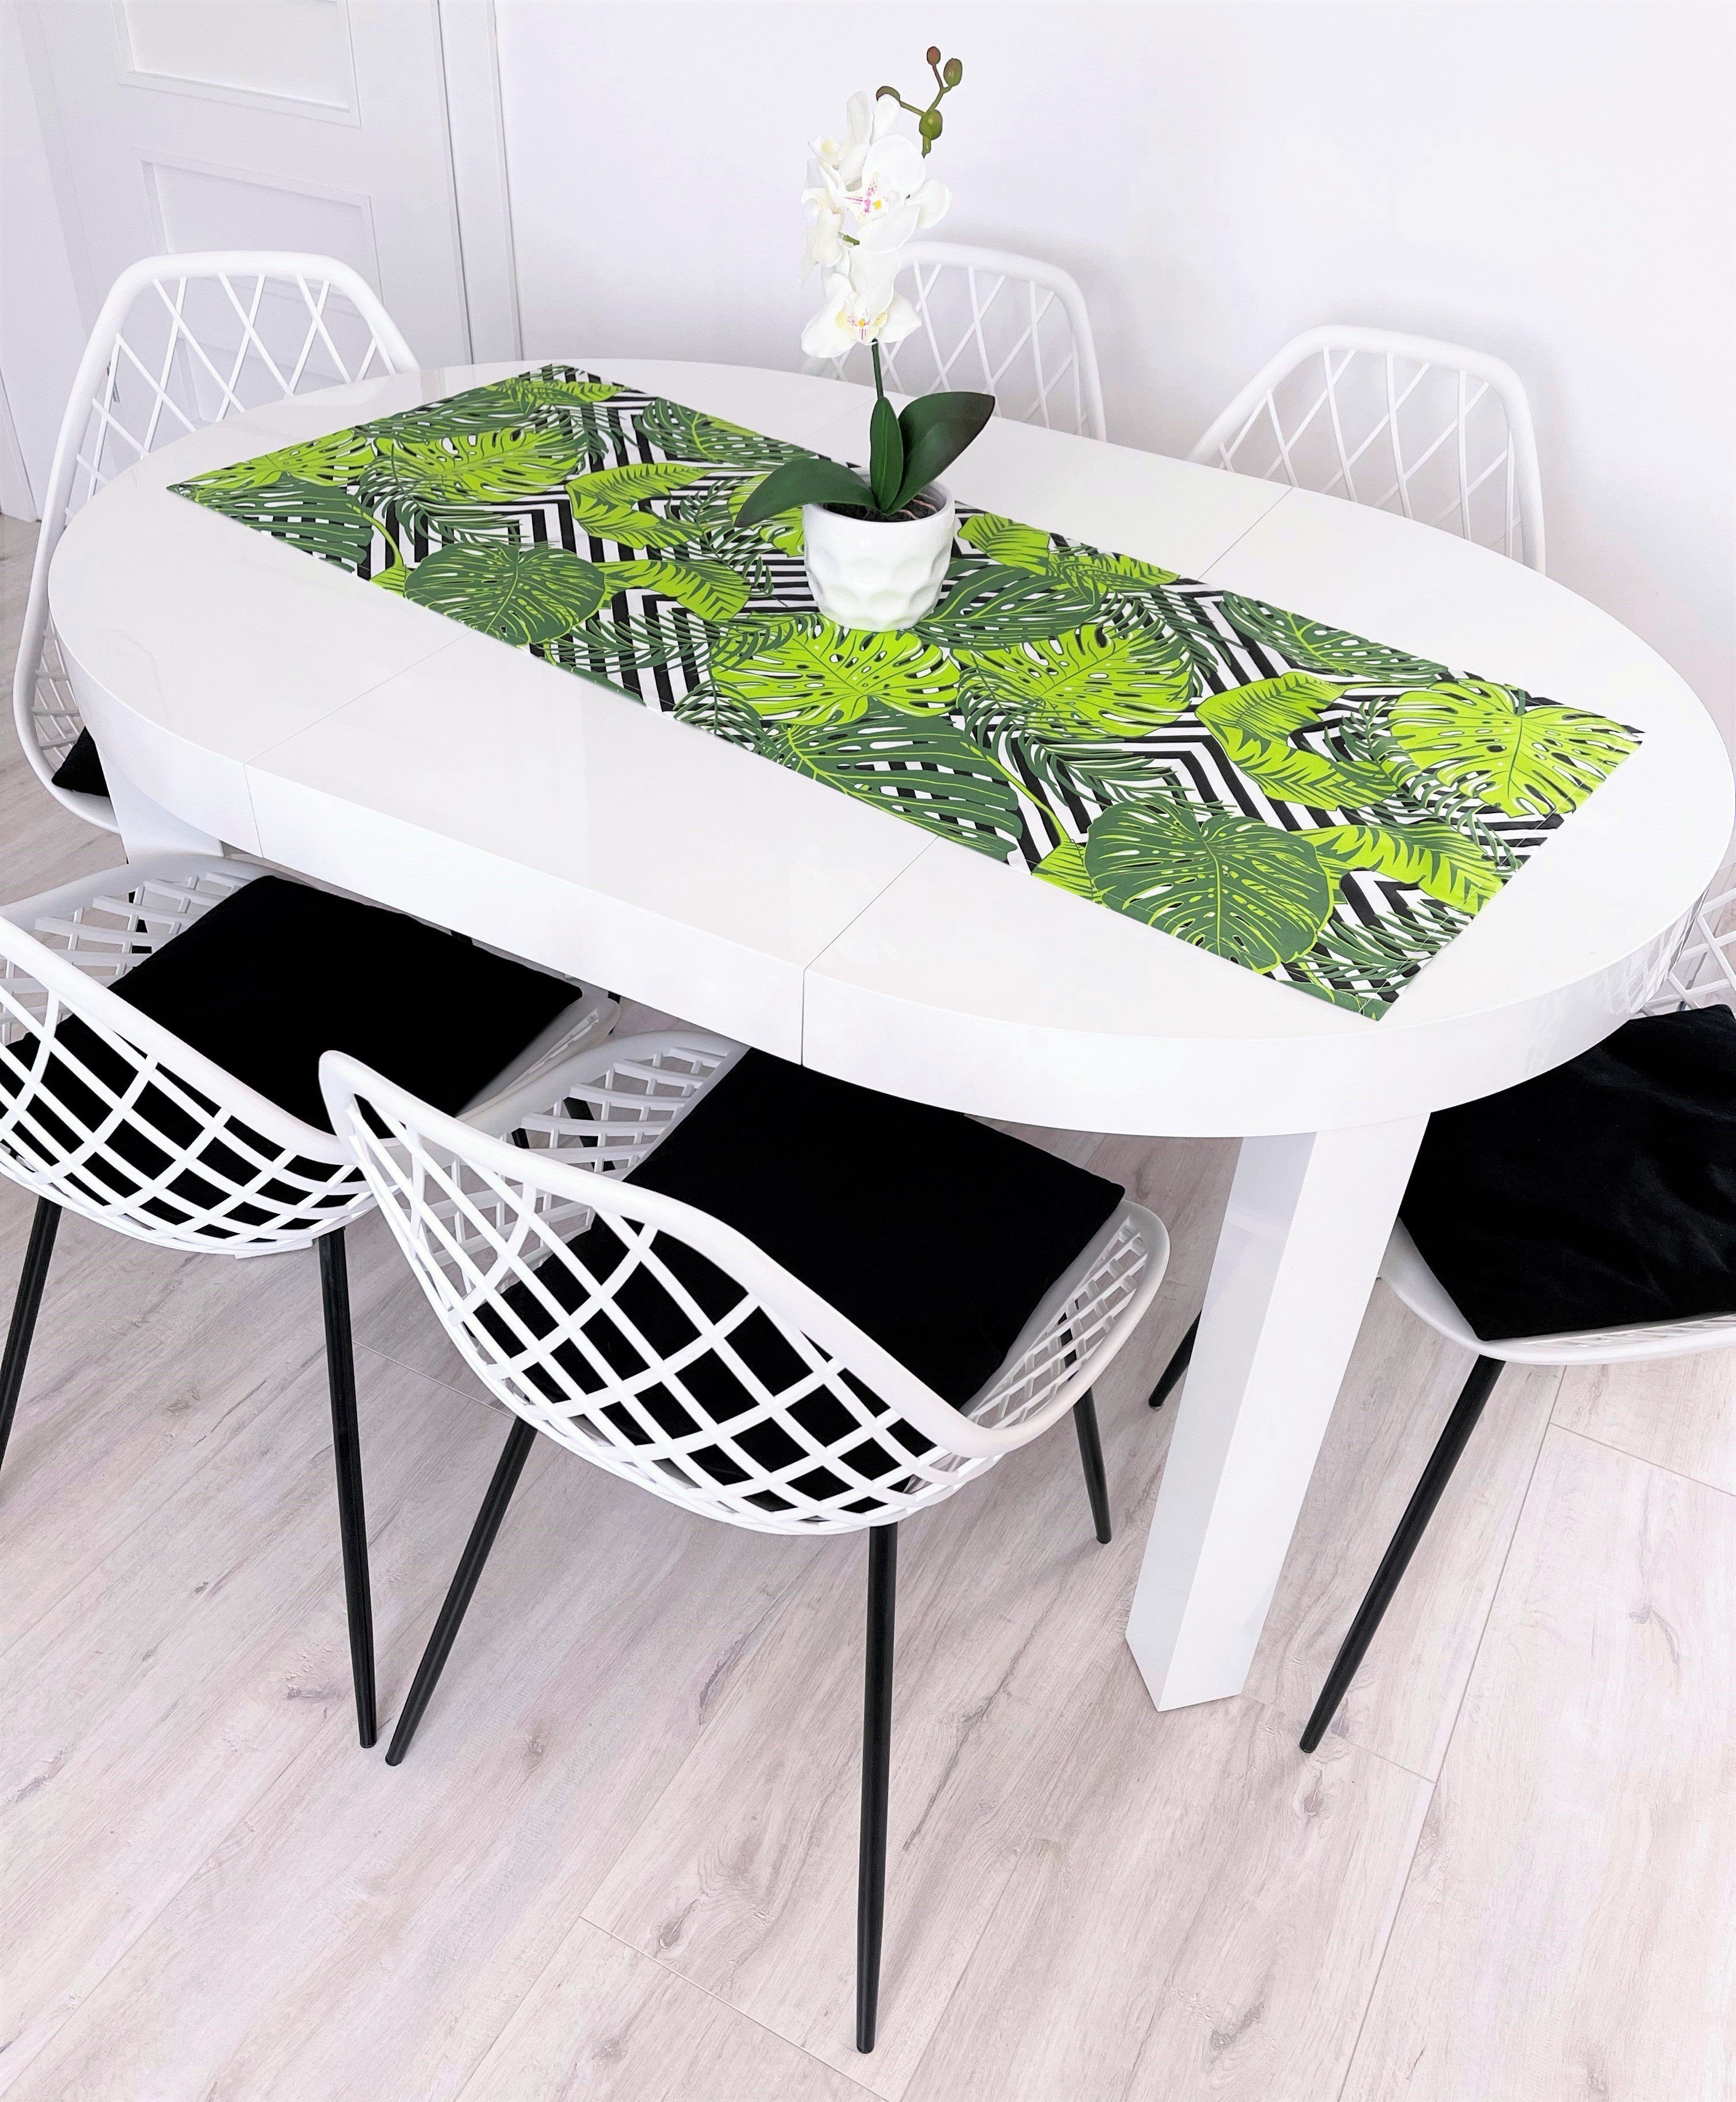 100% Baumwolle in Tischläufer Tisch RoKo-Textilien Maßen Tischläufer Tischdecke Tischlaeufer verfügbar gedeckter 18